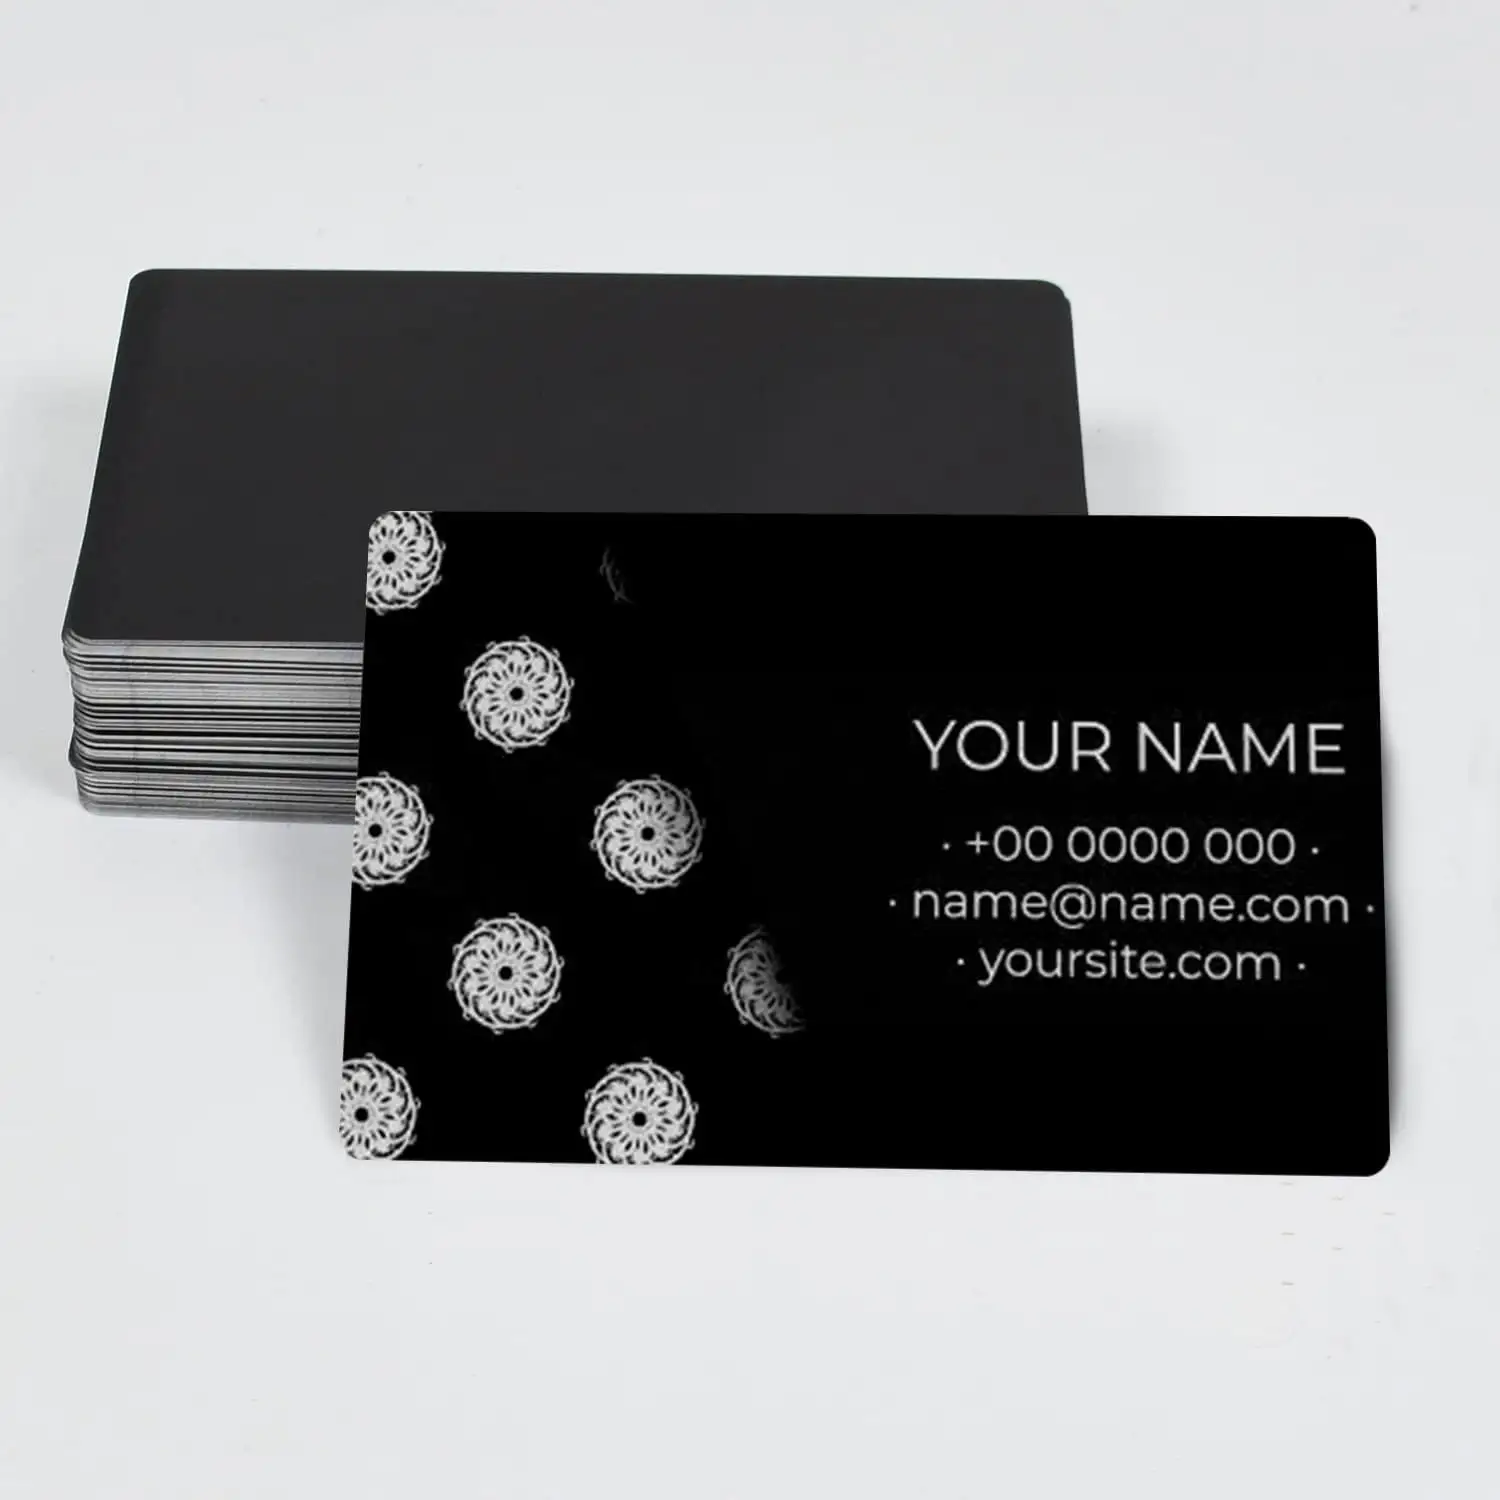 Personalizar lujo CNC grabador láser grabado DIY tarjetas regalo placa tarjetas metal oficina cliente negro metal tarjeta de visita